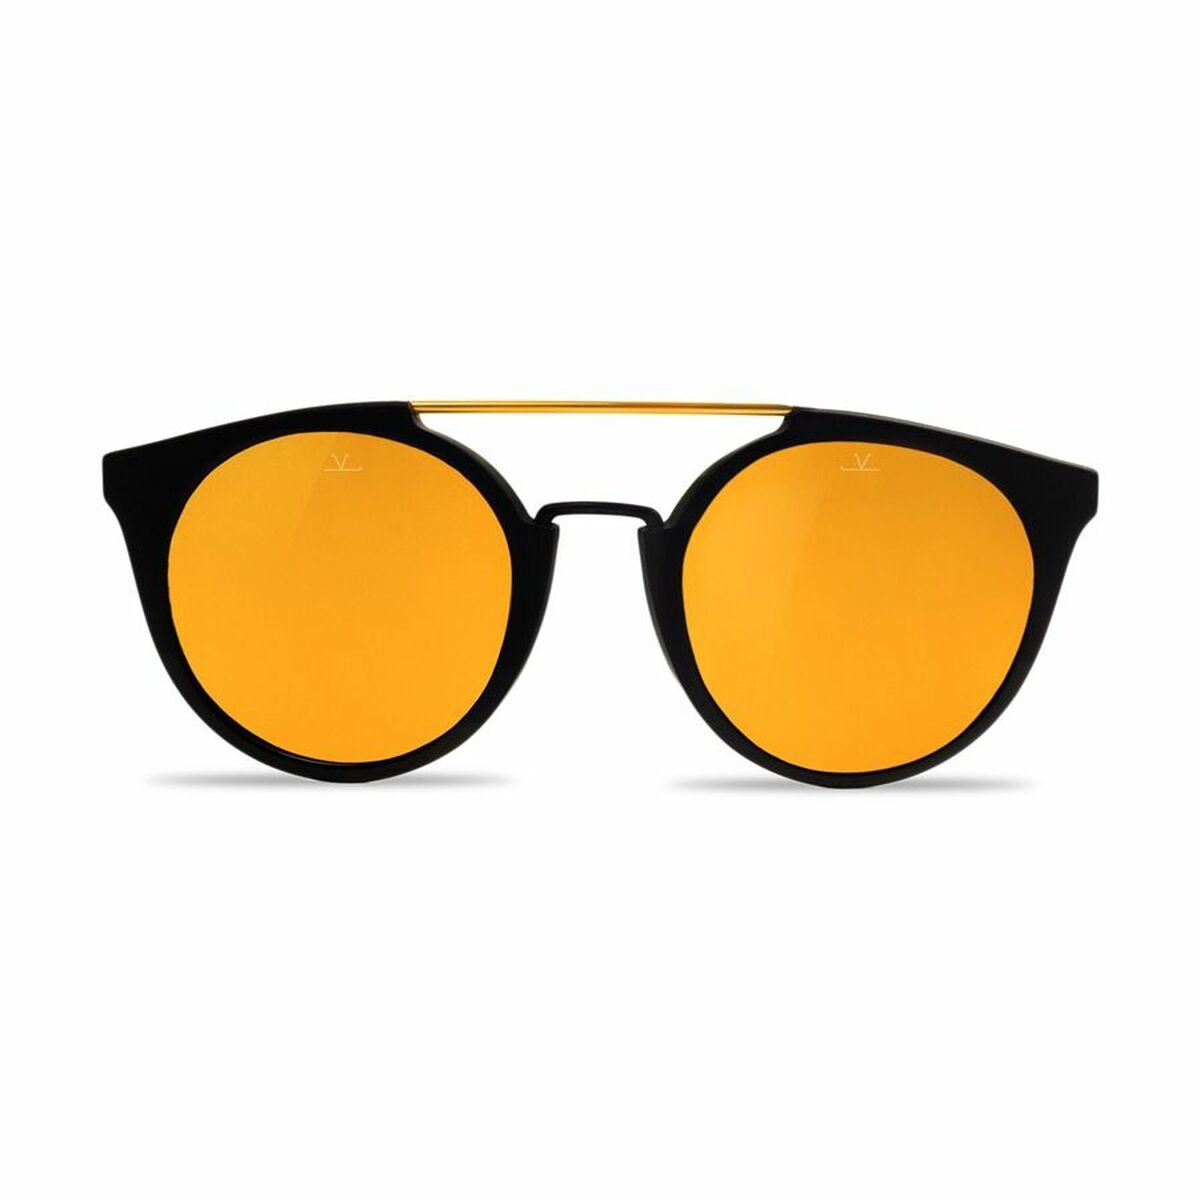 Kaufe Damensonnenbrille Vuarnet VL160200012124 ø 56 mm bei AWK Flagship um € 99.00